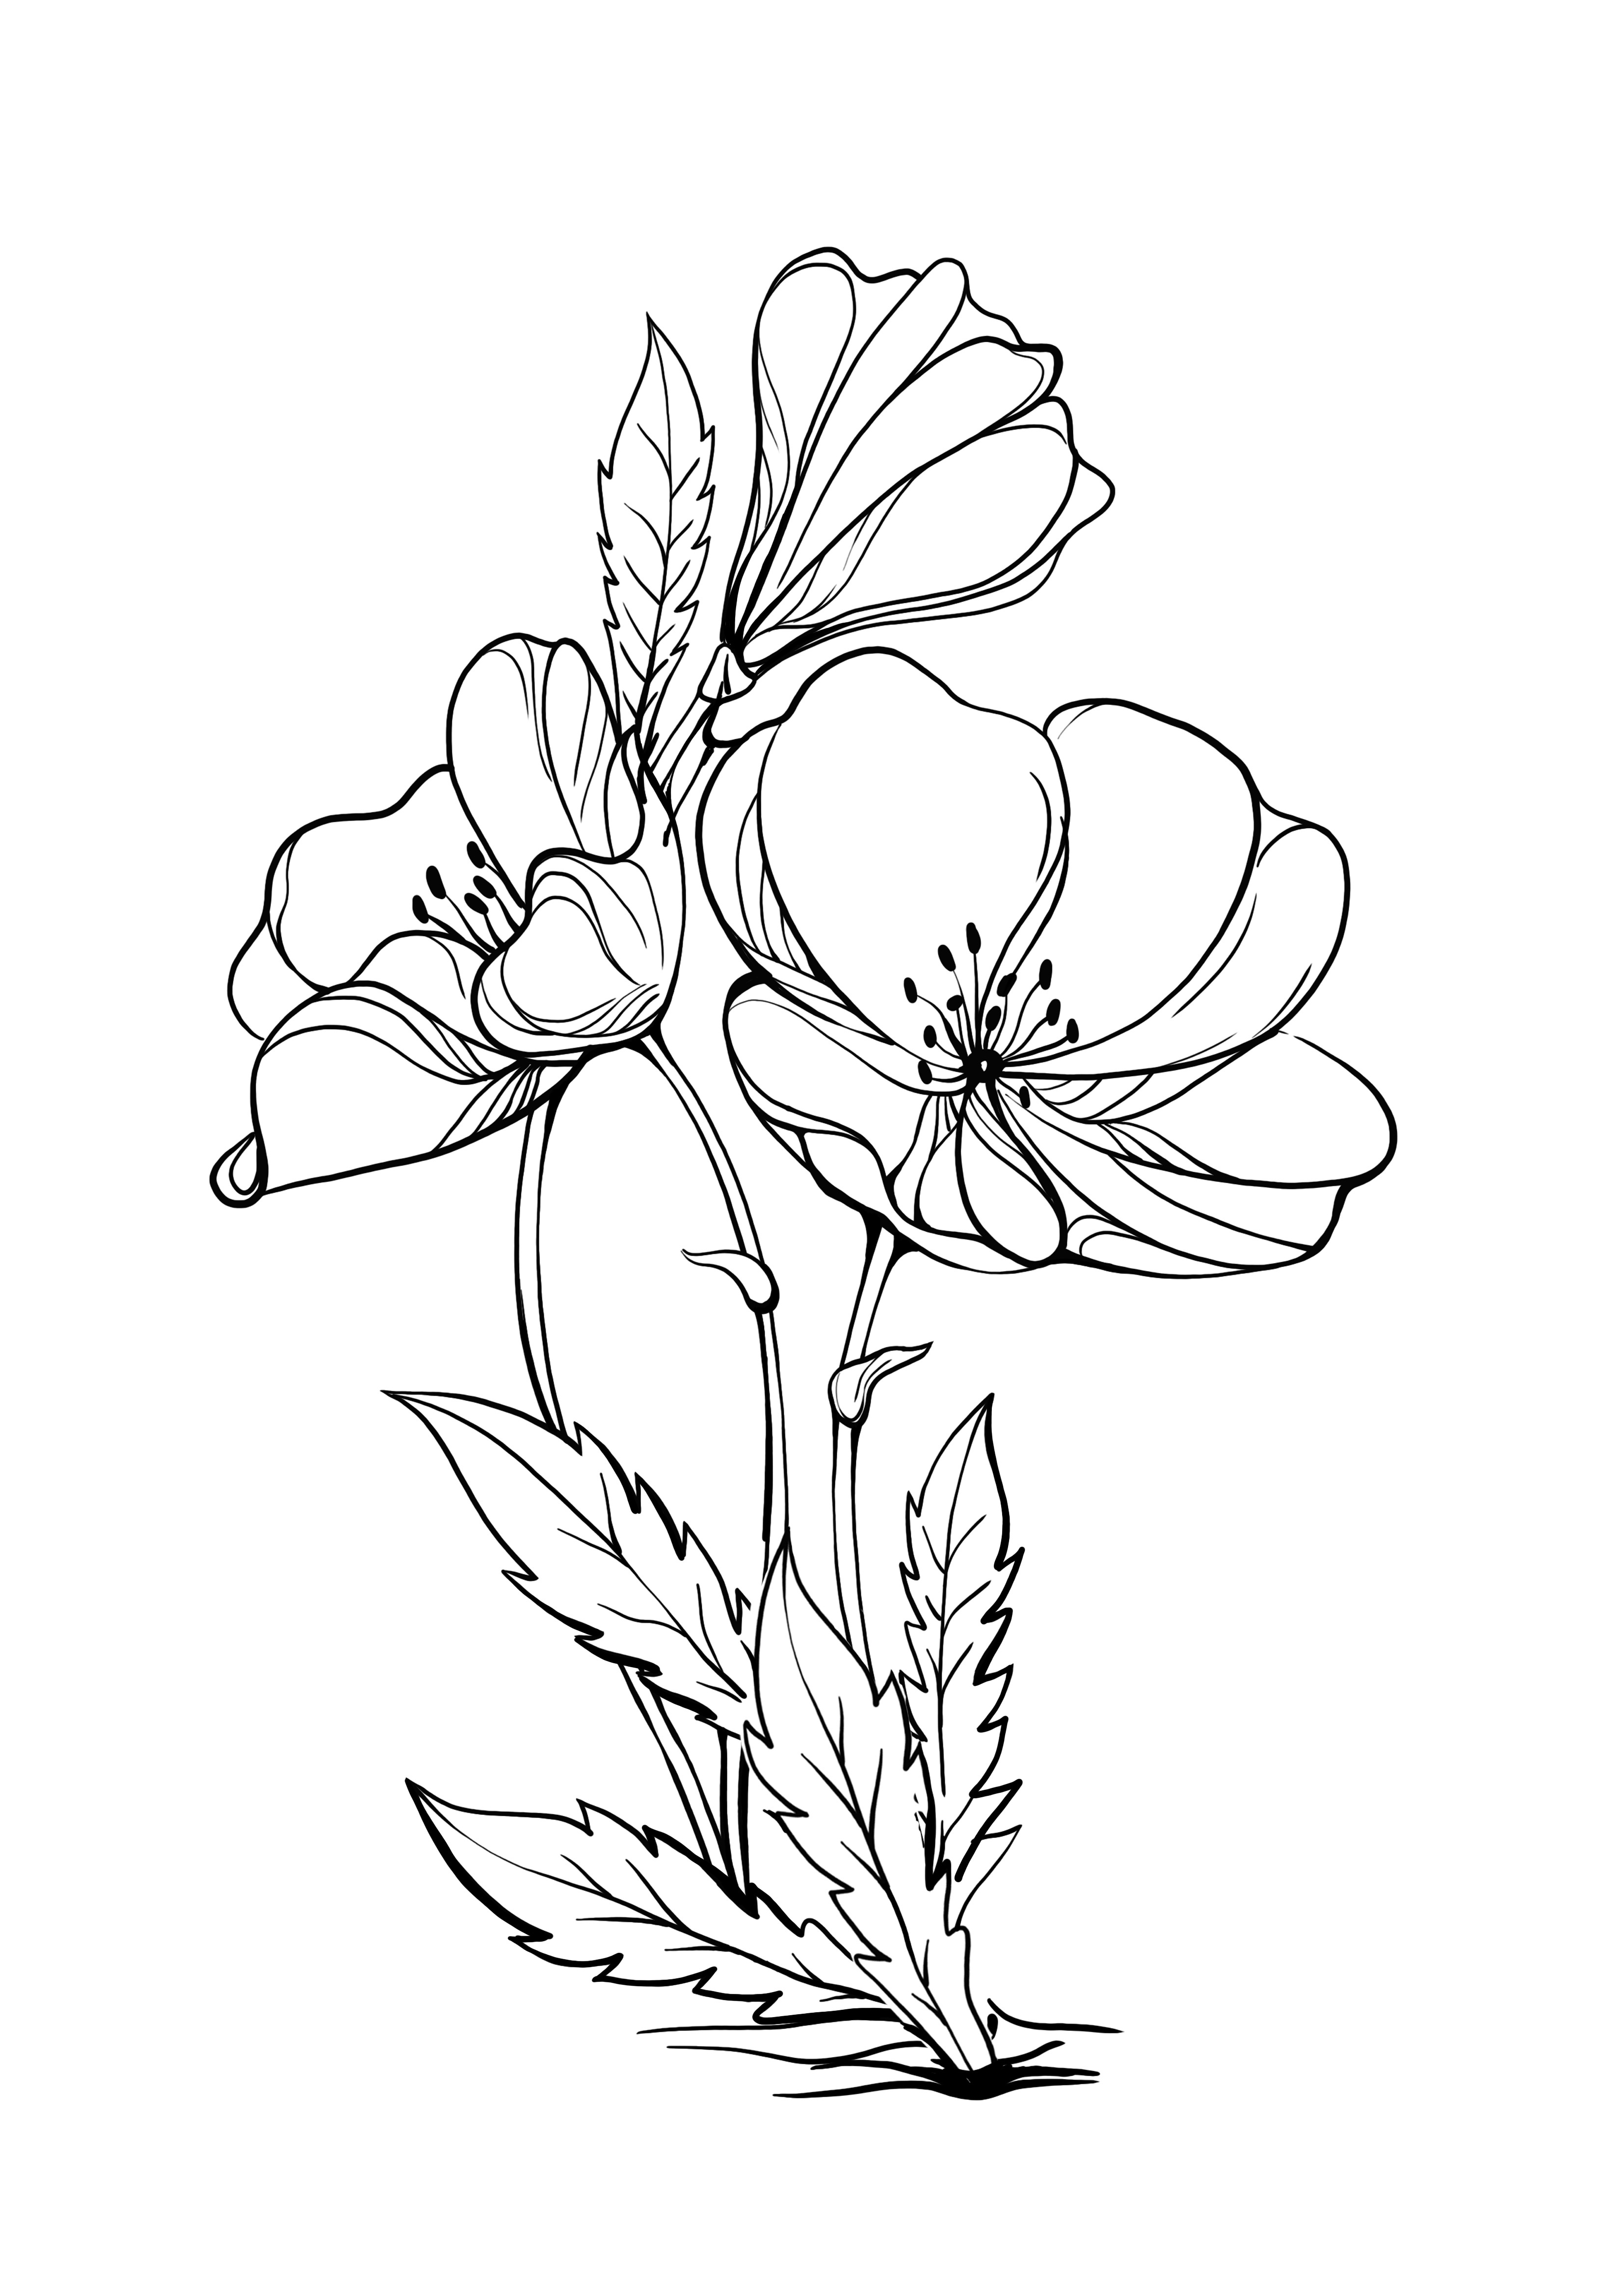 evening primrose dapat dicetak dan diwarnai